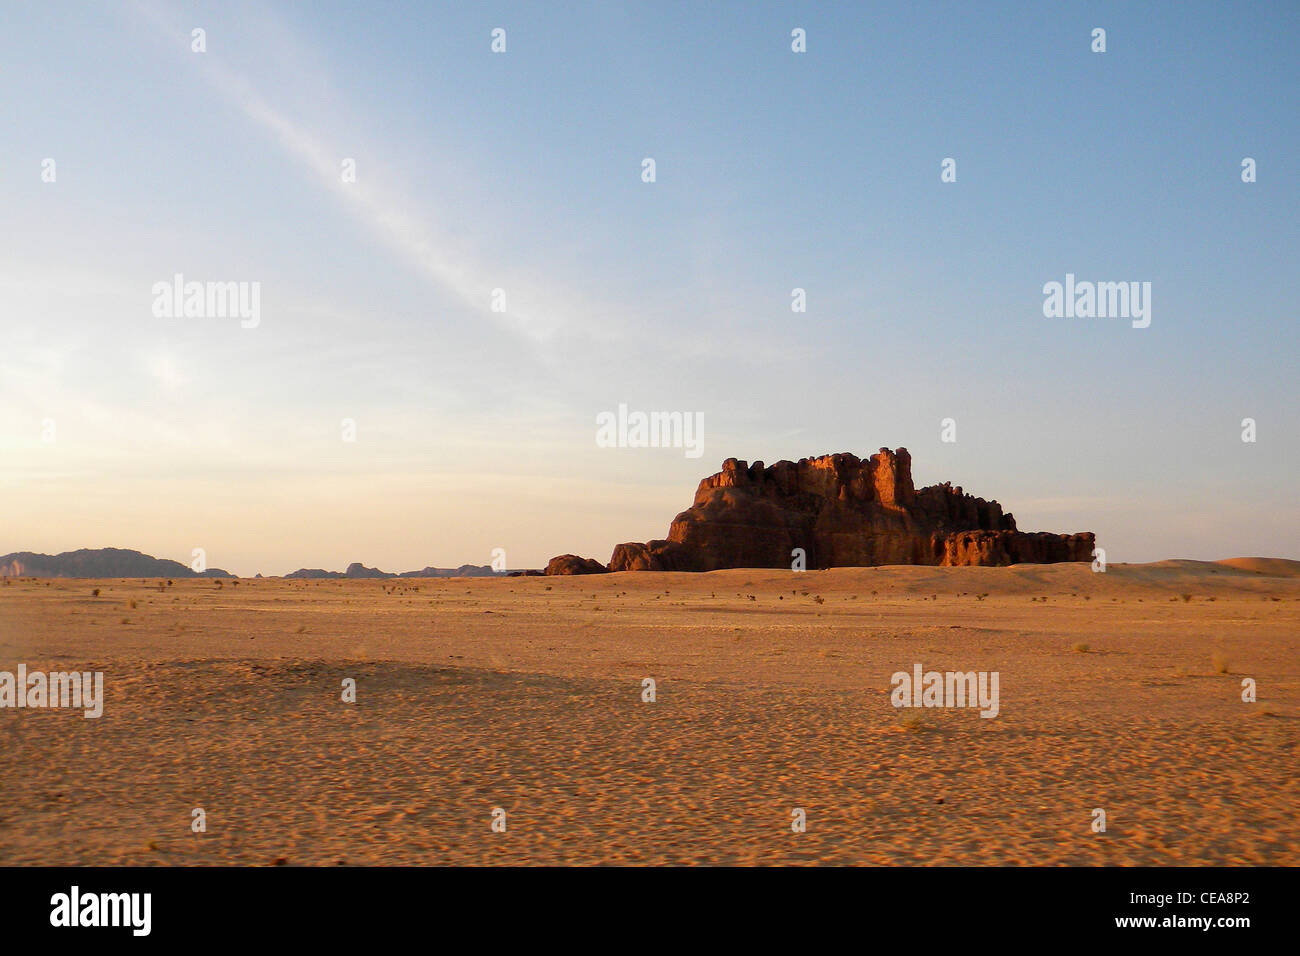 Ennedi region, Chad Stock Photo - Alamy